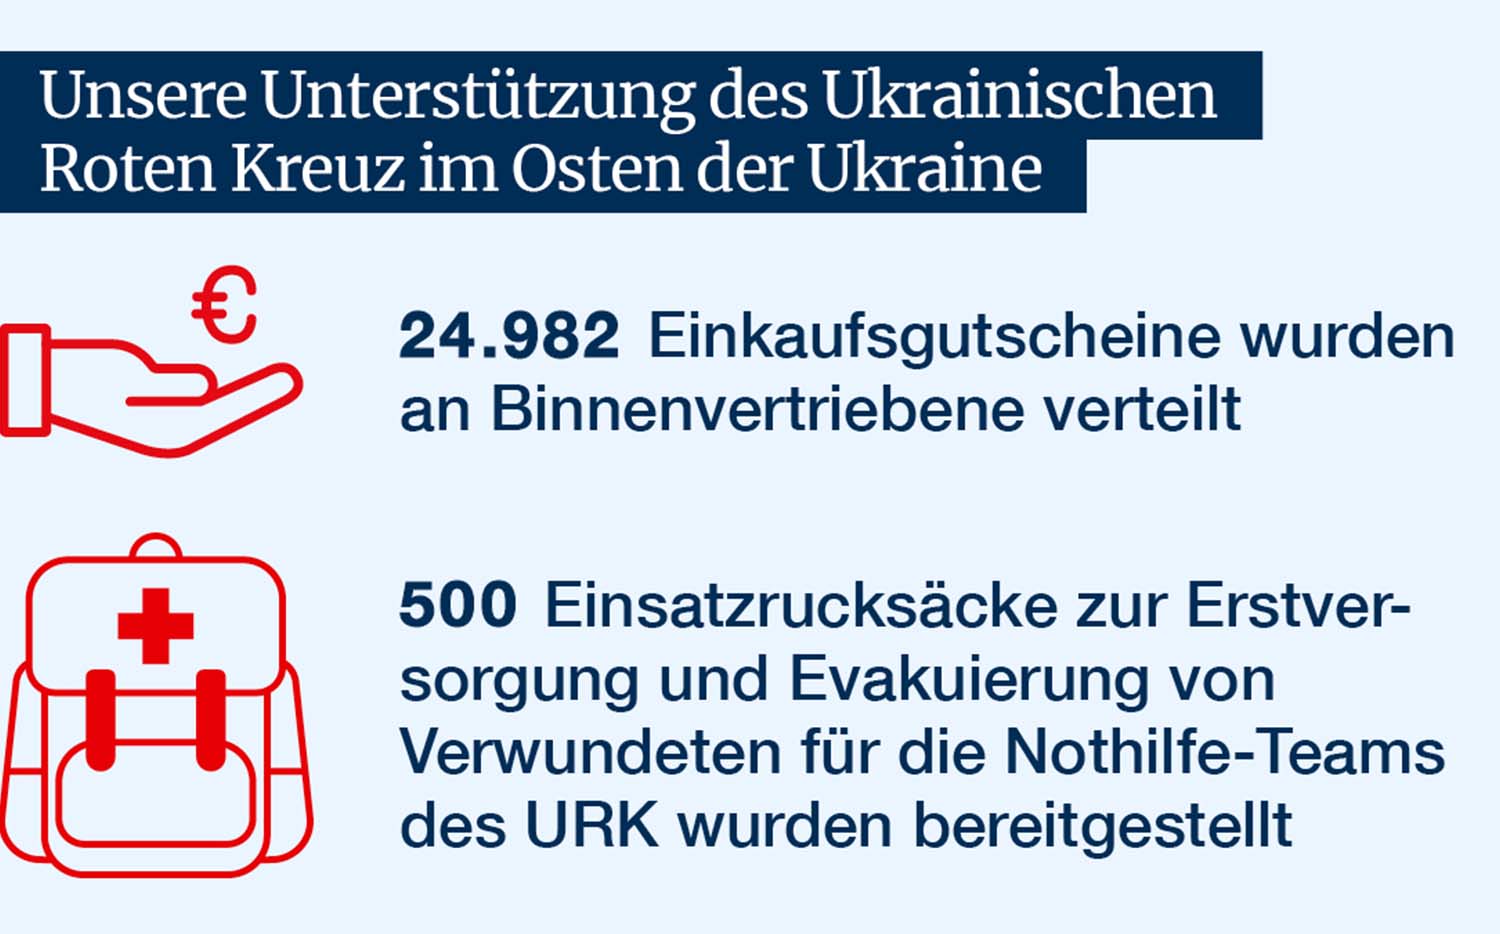 Sechs Monate DRK-Hilfe in der Ukraine 